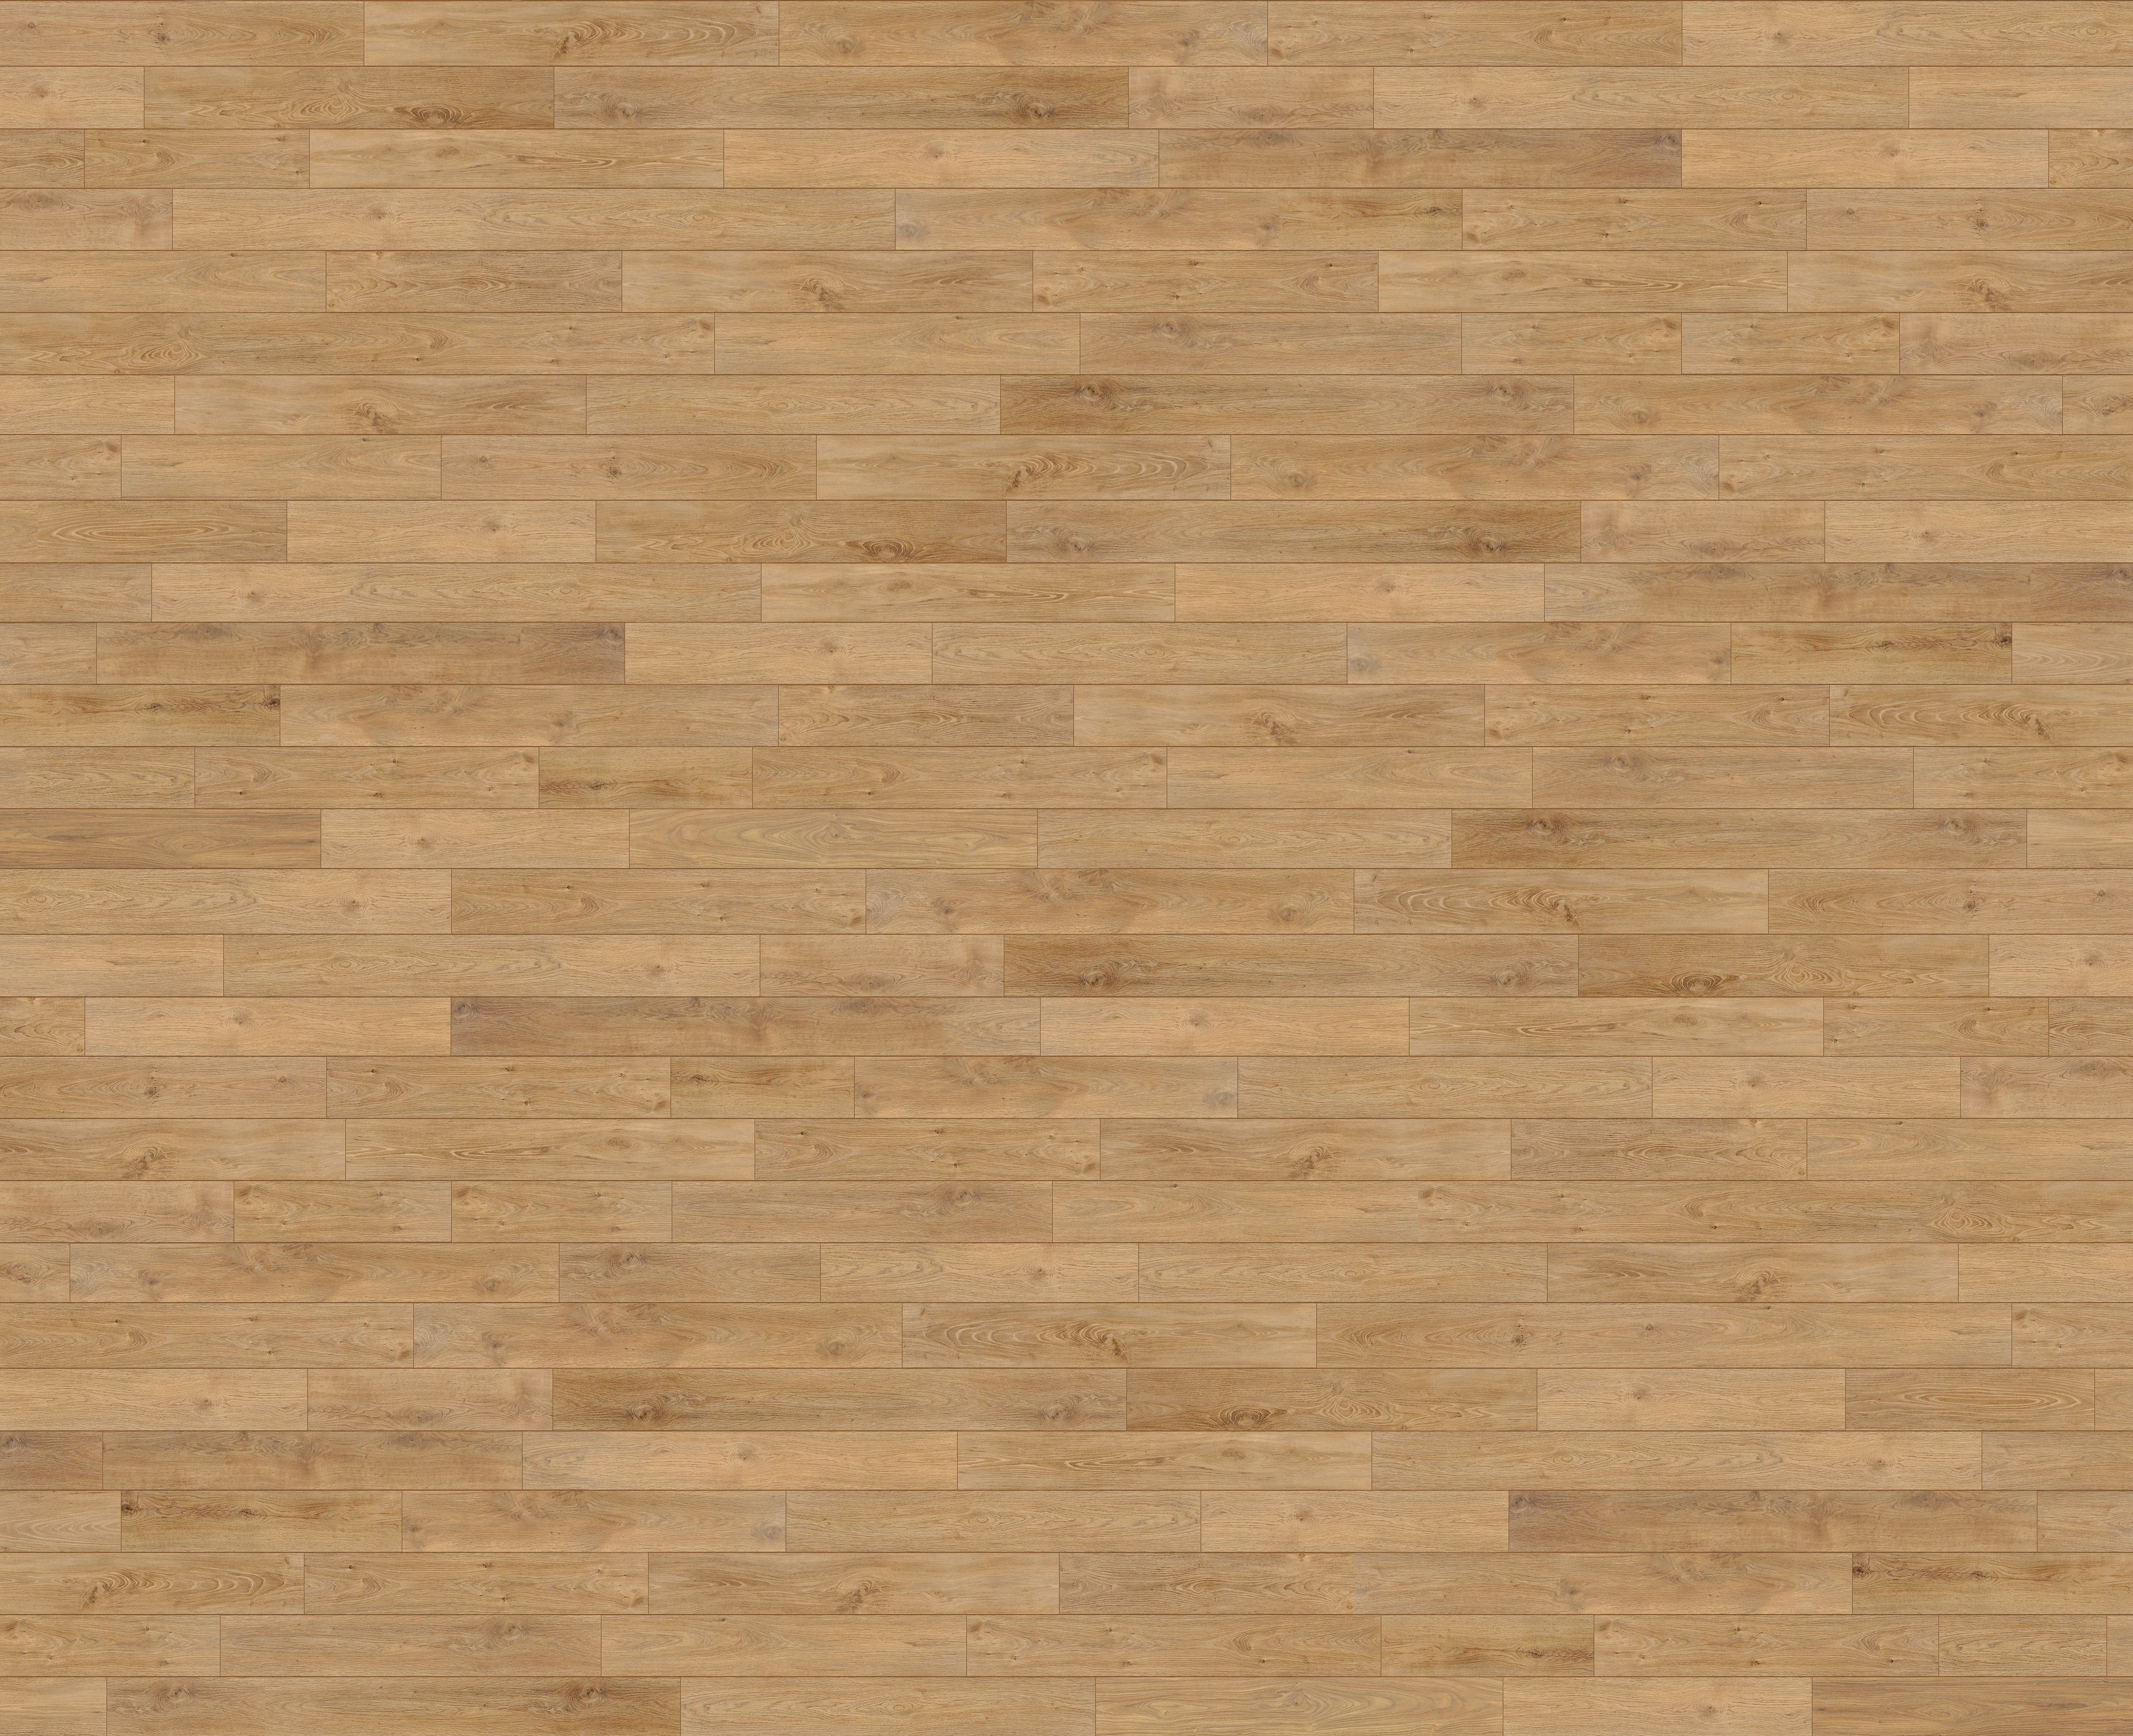 wood floor texture seamless